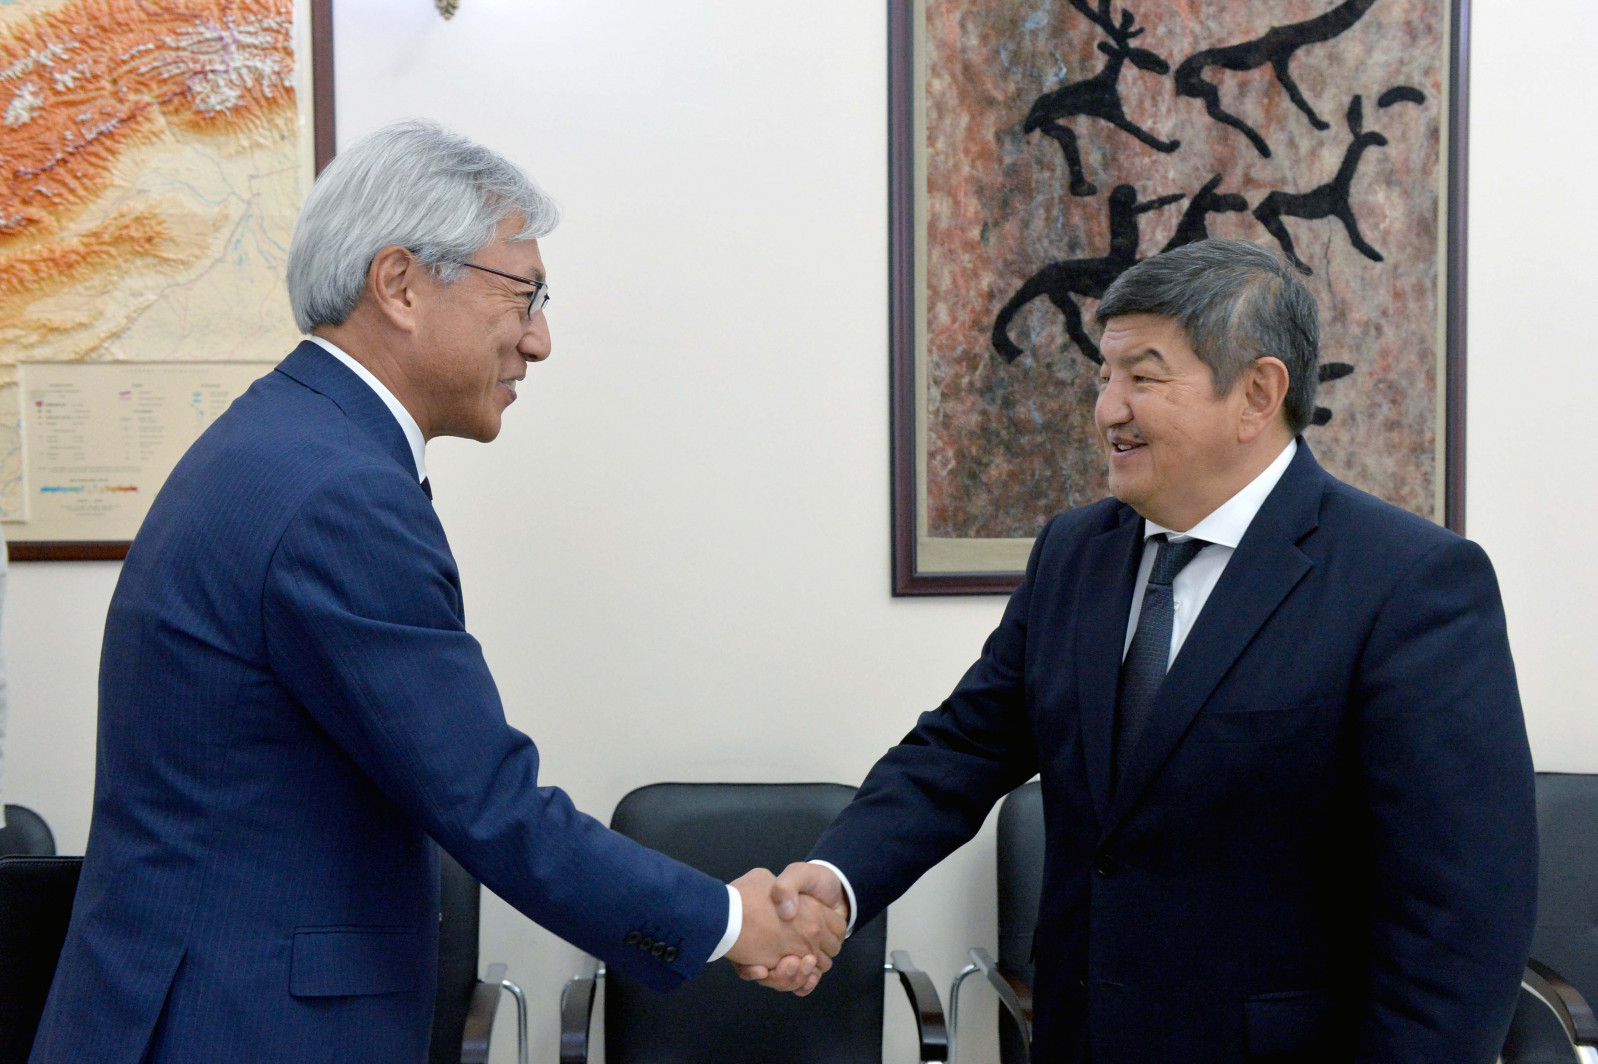 Посол Японии завершает миссию в Кыргызстане. Его принял Акылбек Жапаров